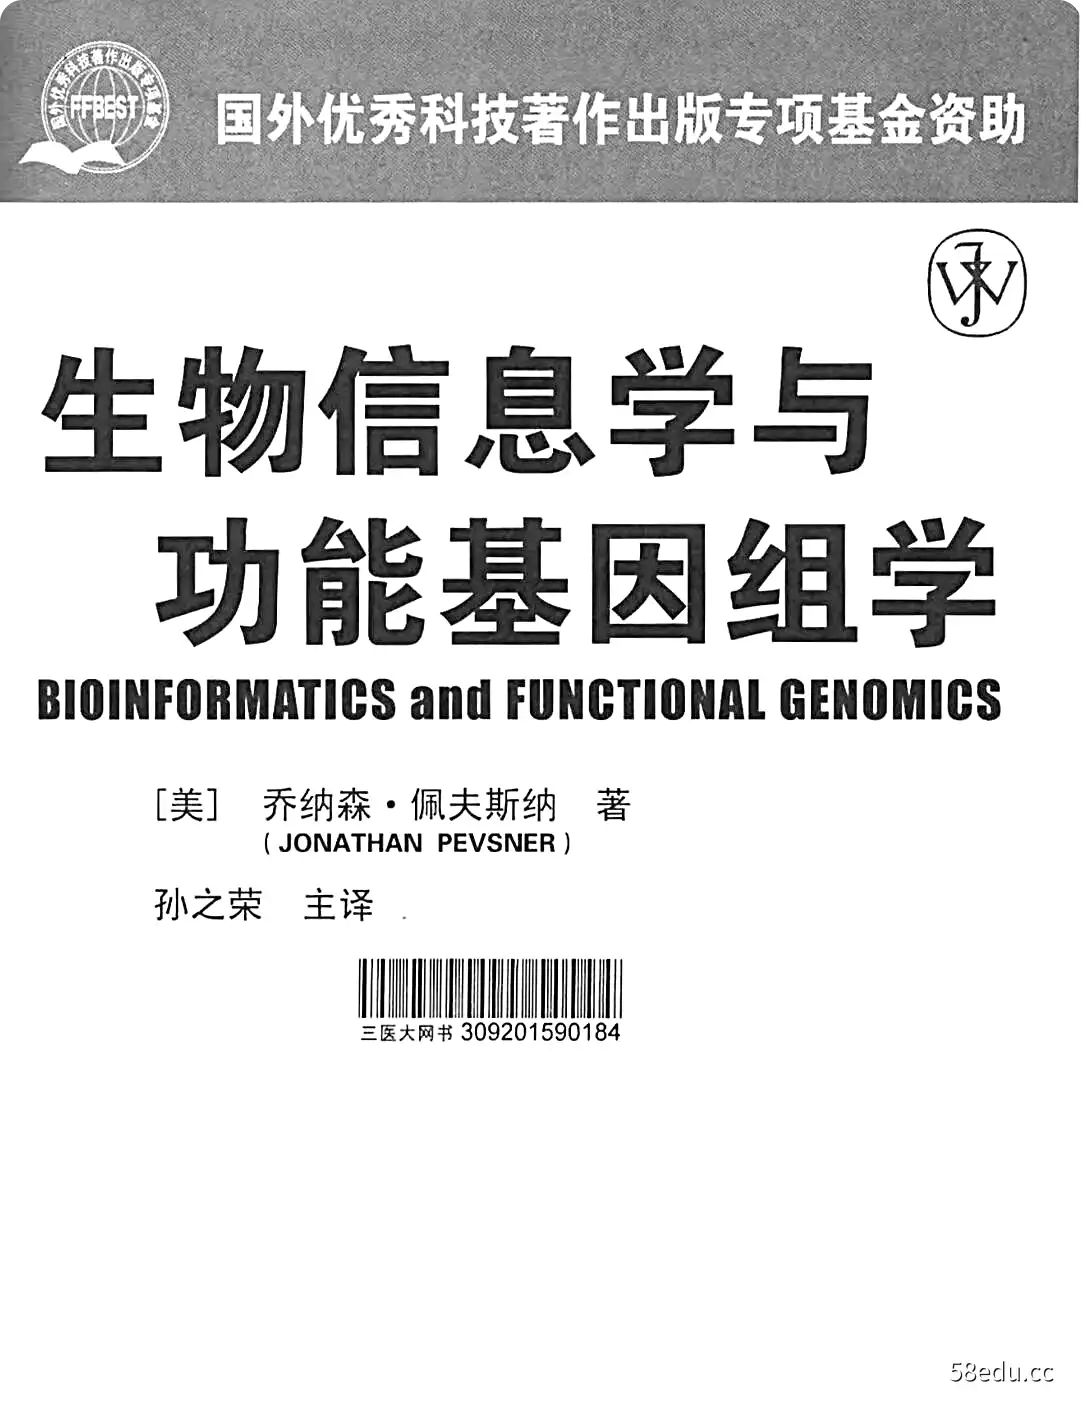 《生物信息学与功能基因组学》PDF电子书下载完整版|百度网盘下载-图书乐园 - 分享优质的图书